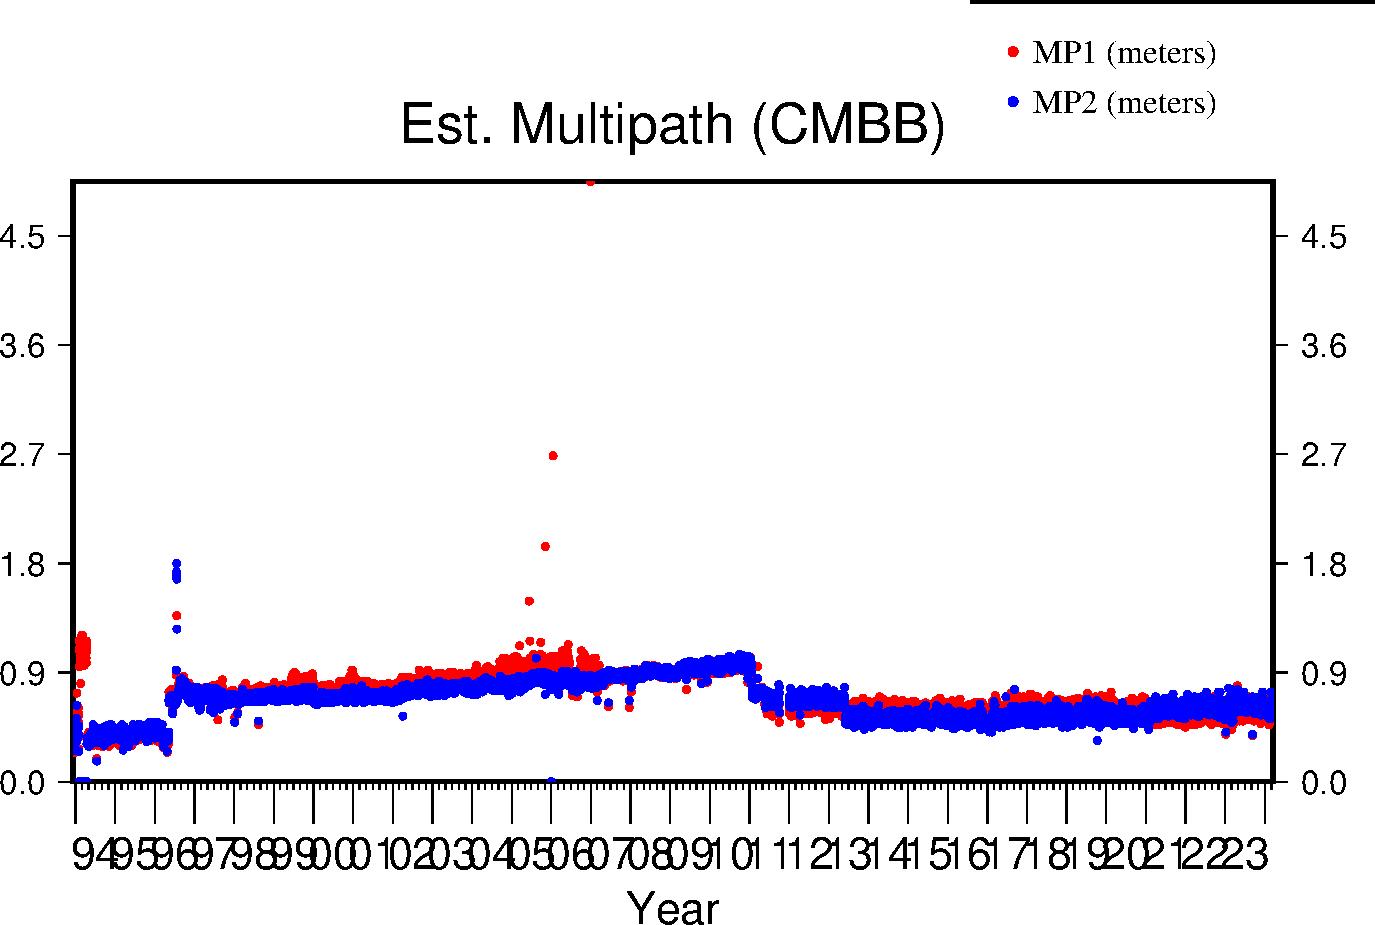 CMBB multipath lifetime